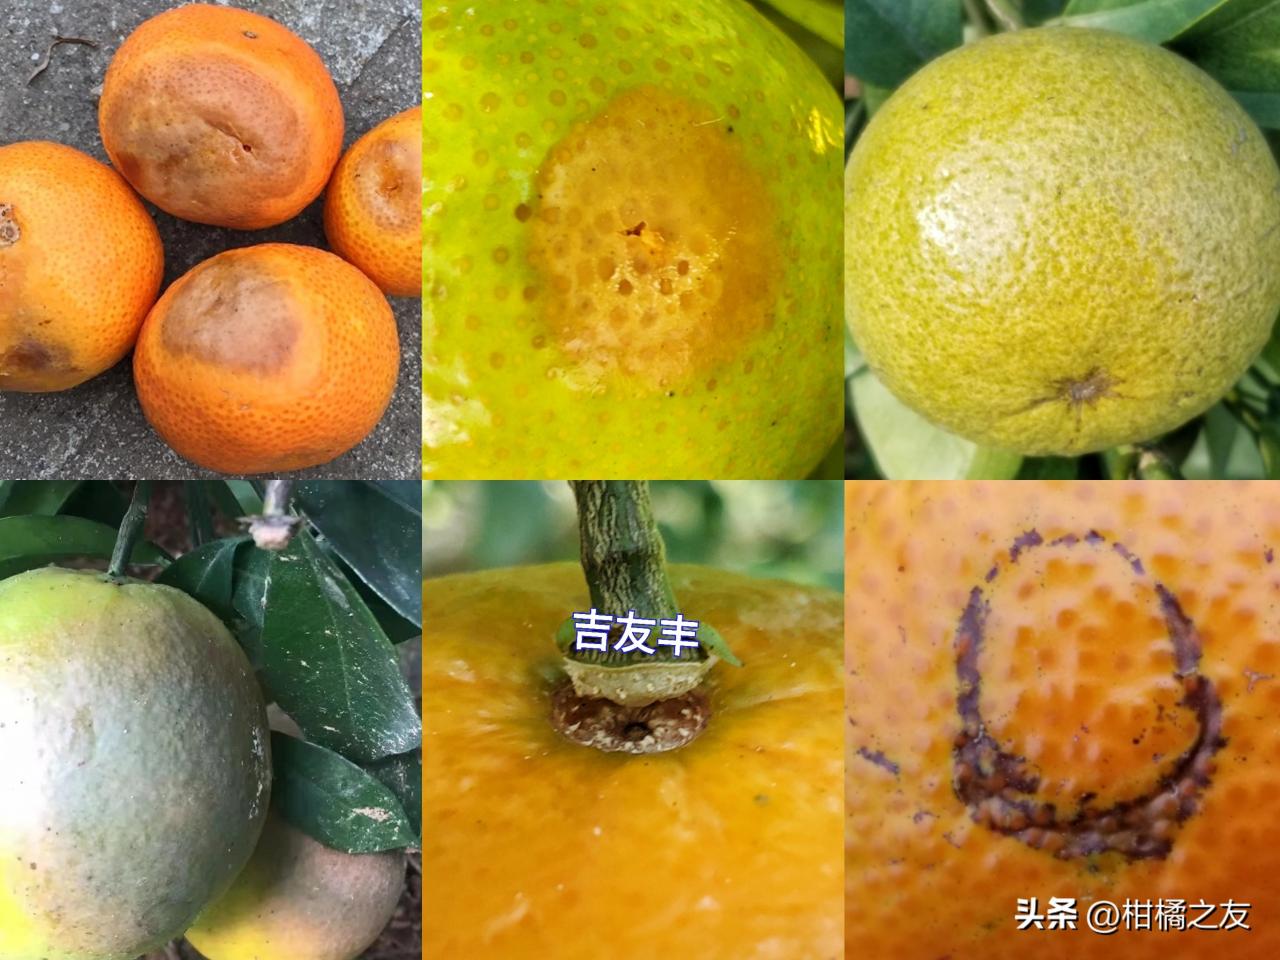 柑橘成熟前防治三大虫害与两大病害，药害预防方法分享